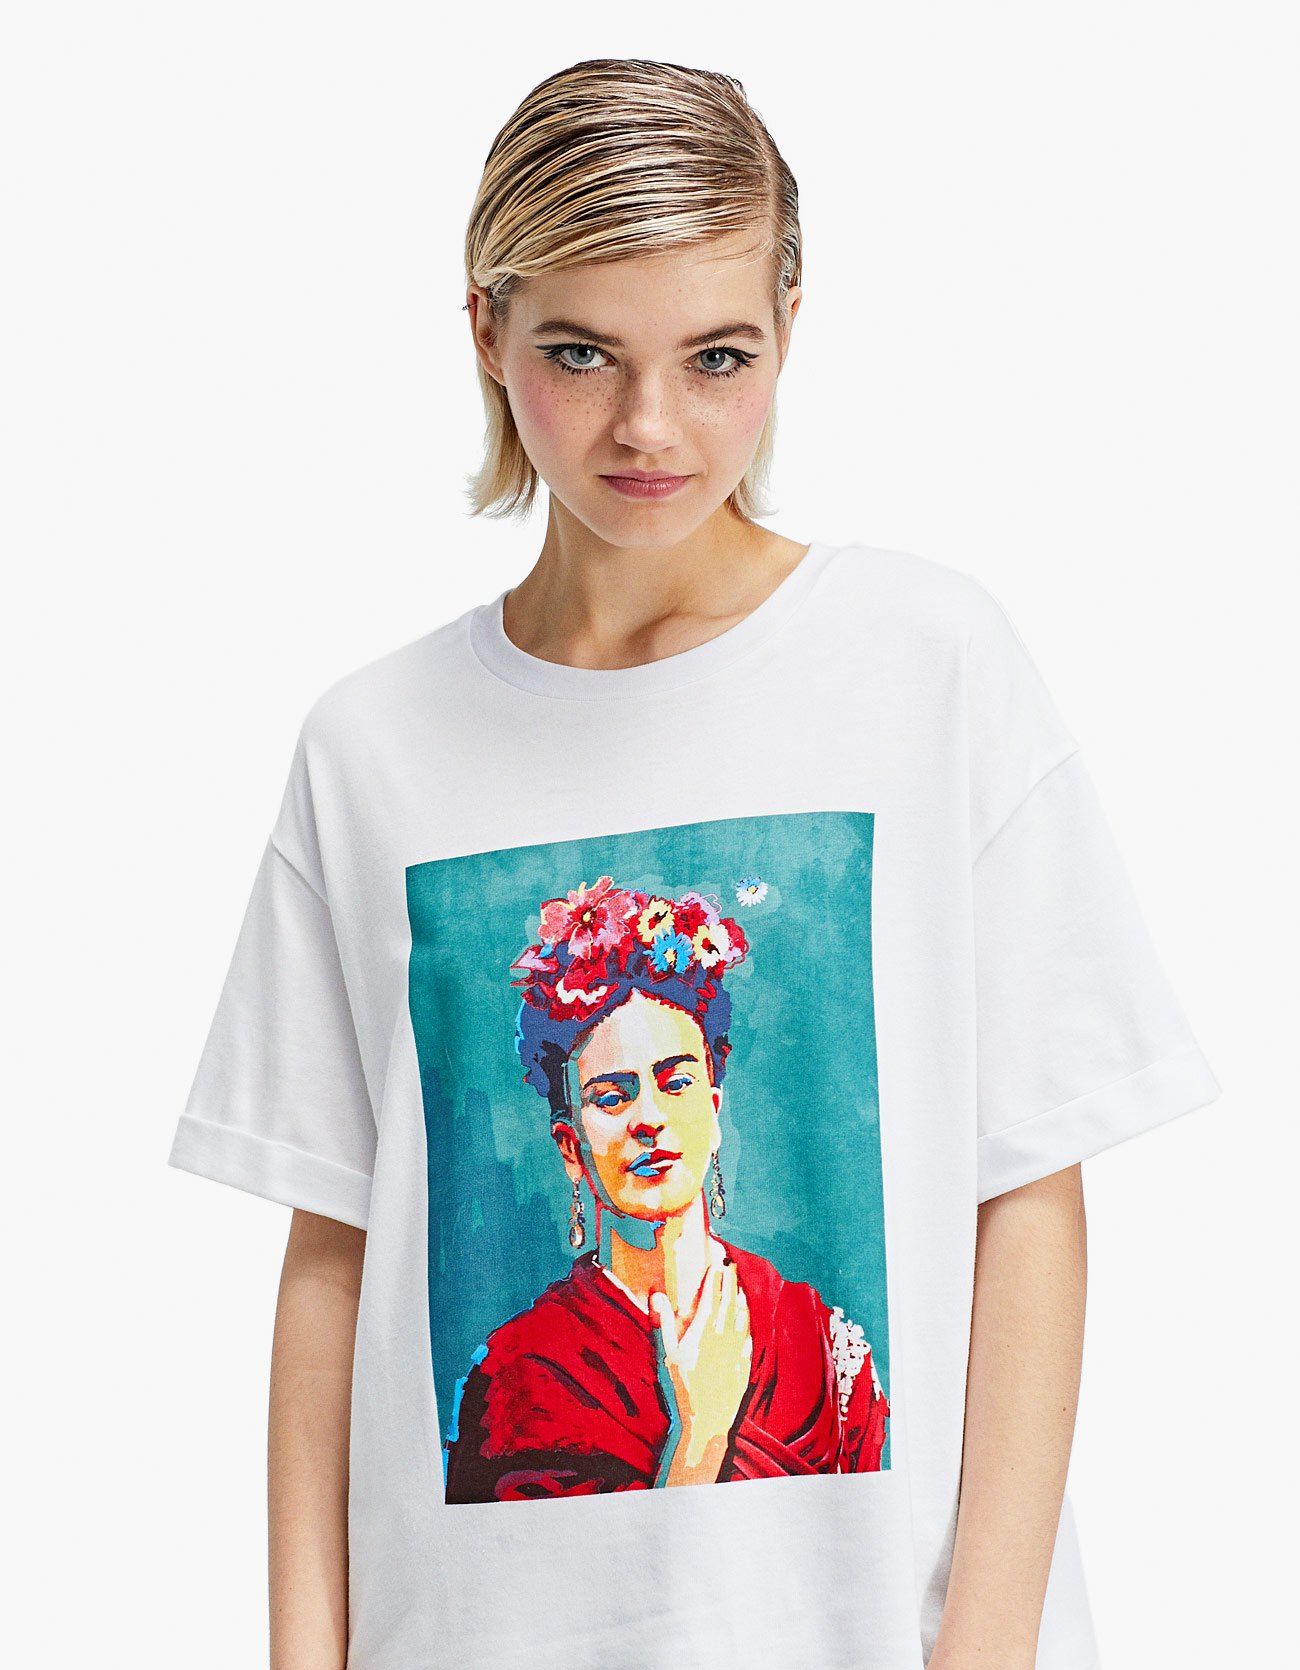 La fridamanía vuelve a la moda - Stradivarius tiene las camisetas de Frida Kahlo totales